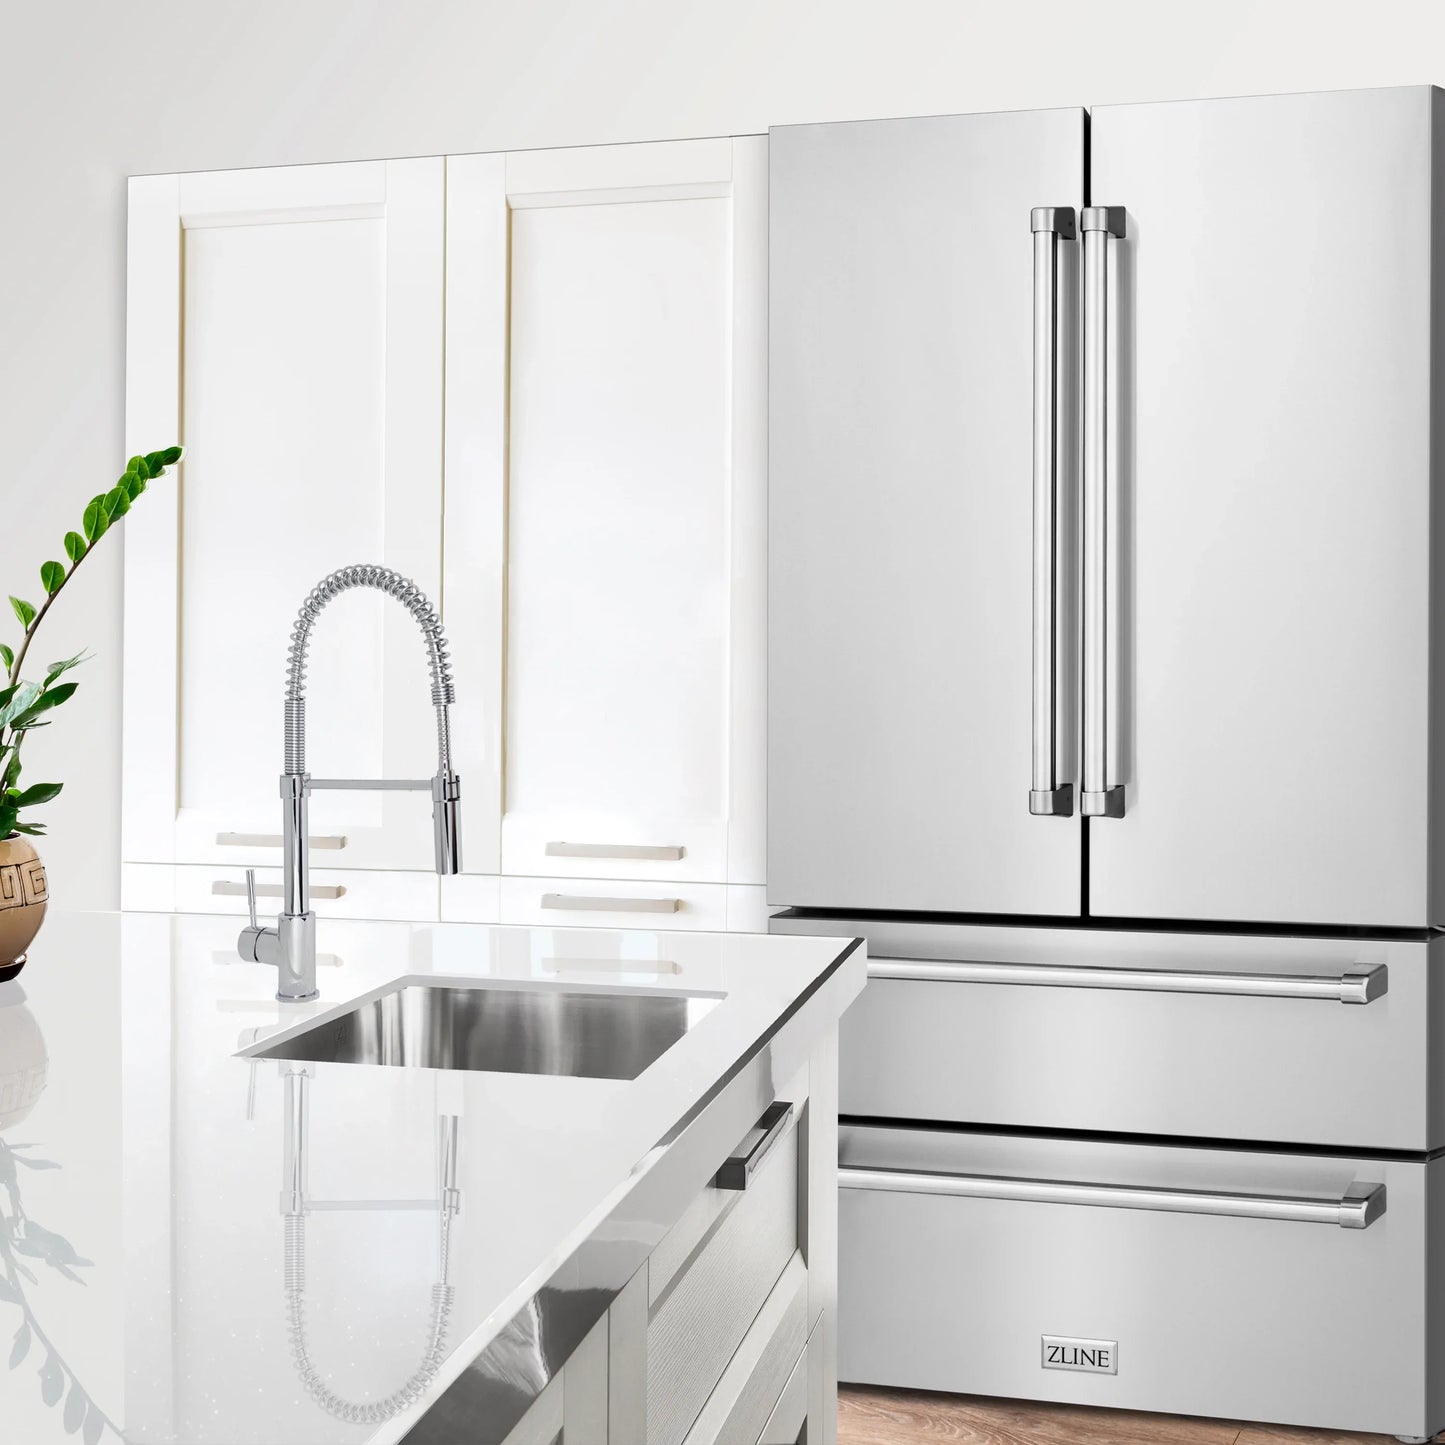 ZLINE 4 Piece Kitchen Package | Range | Refrigerator Over the Range Microwave | Dishwasher